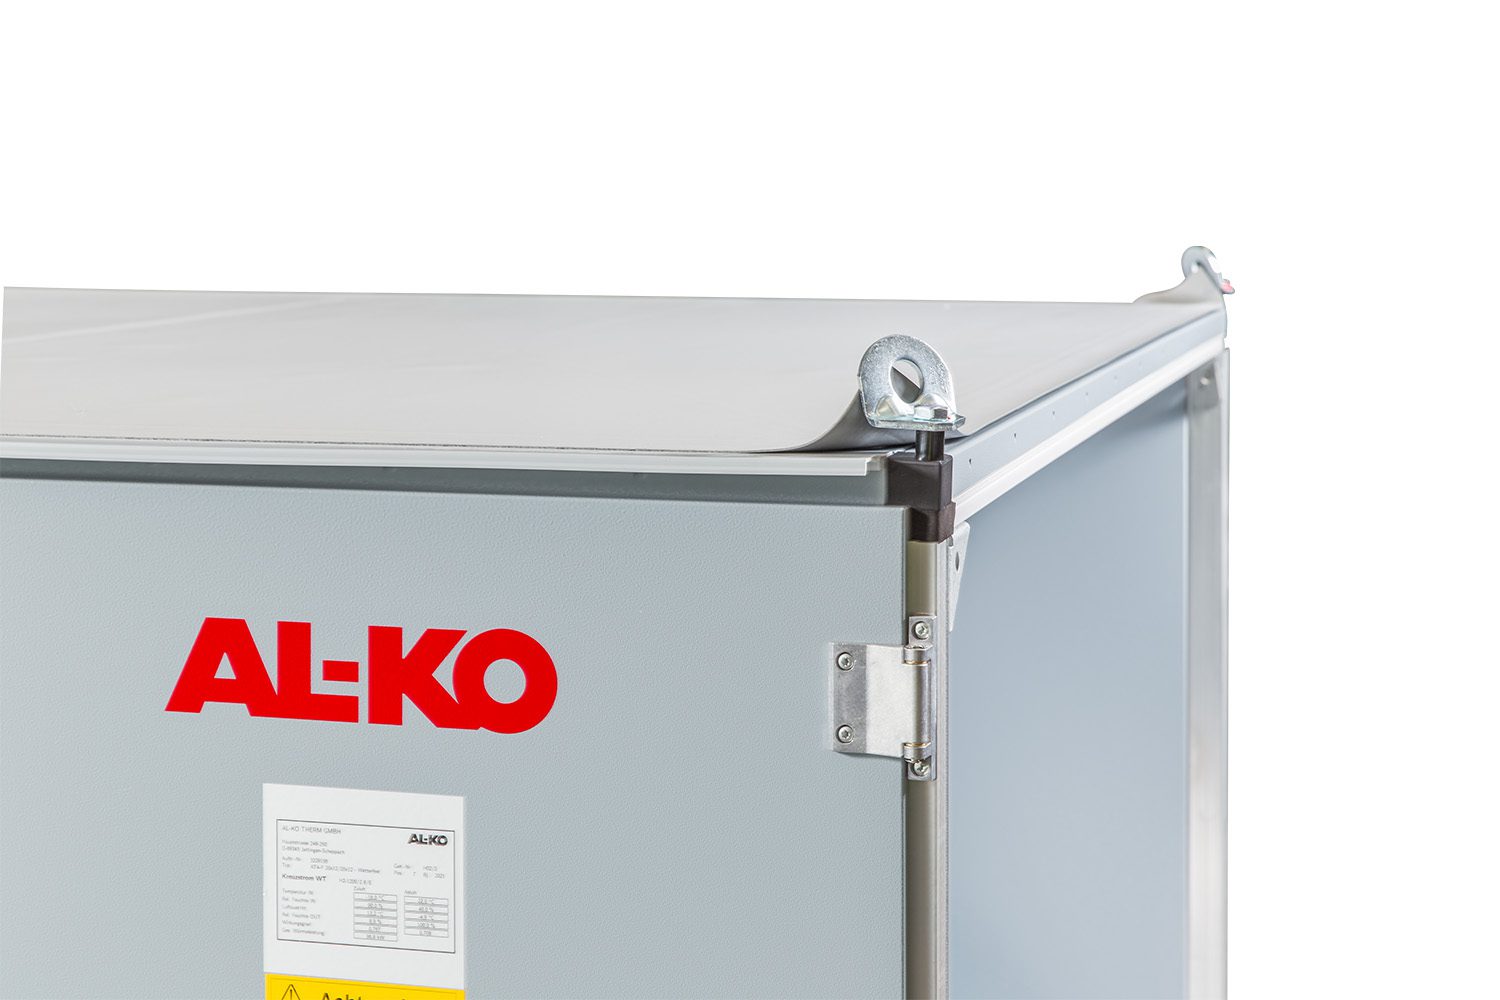 AL-KO AT4 Baureihe – Ihre individuellen Lüftungsgeräte